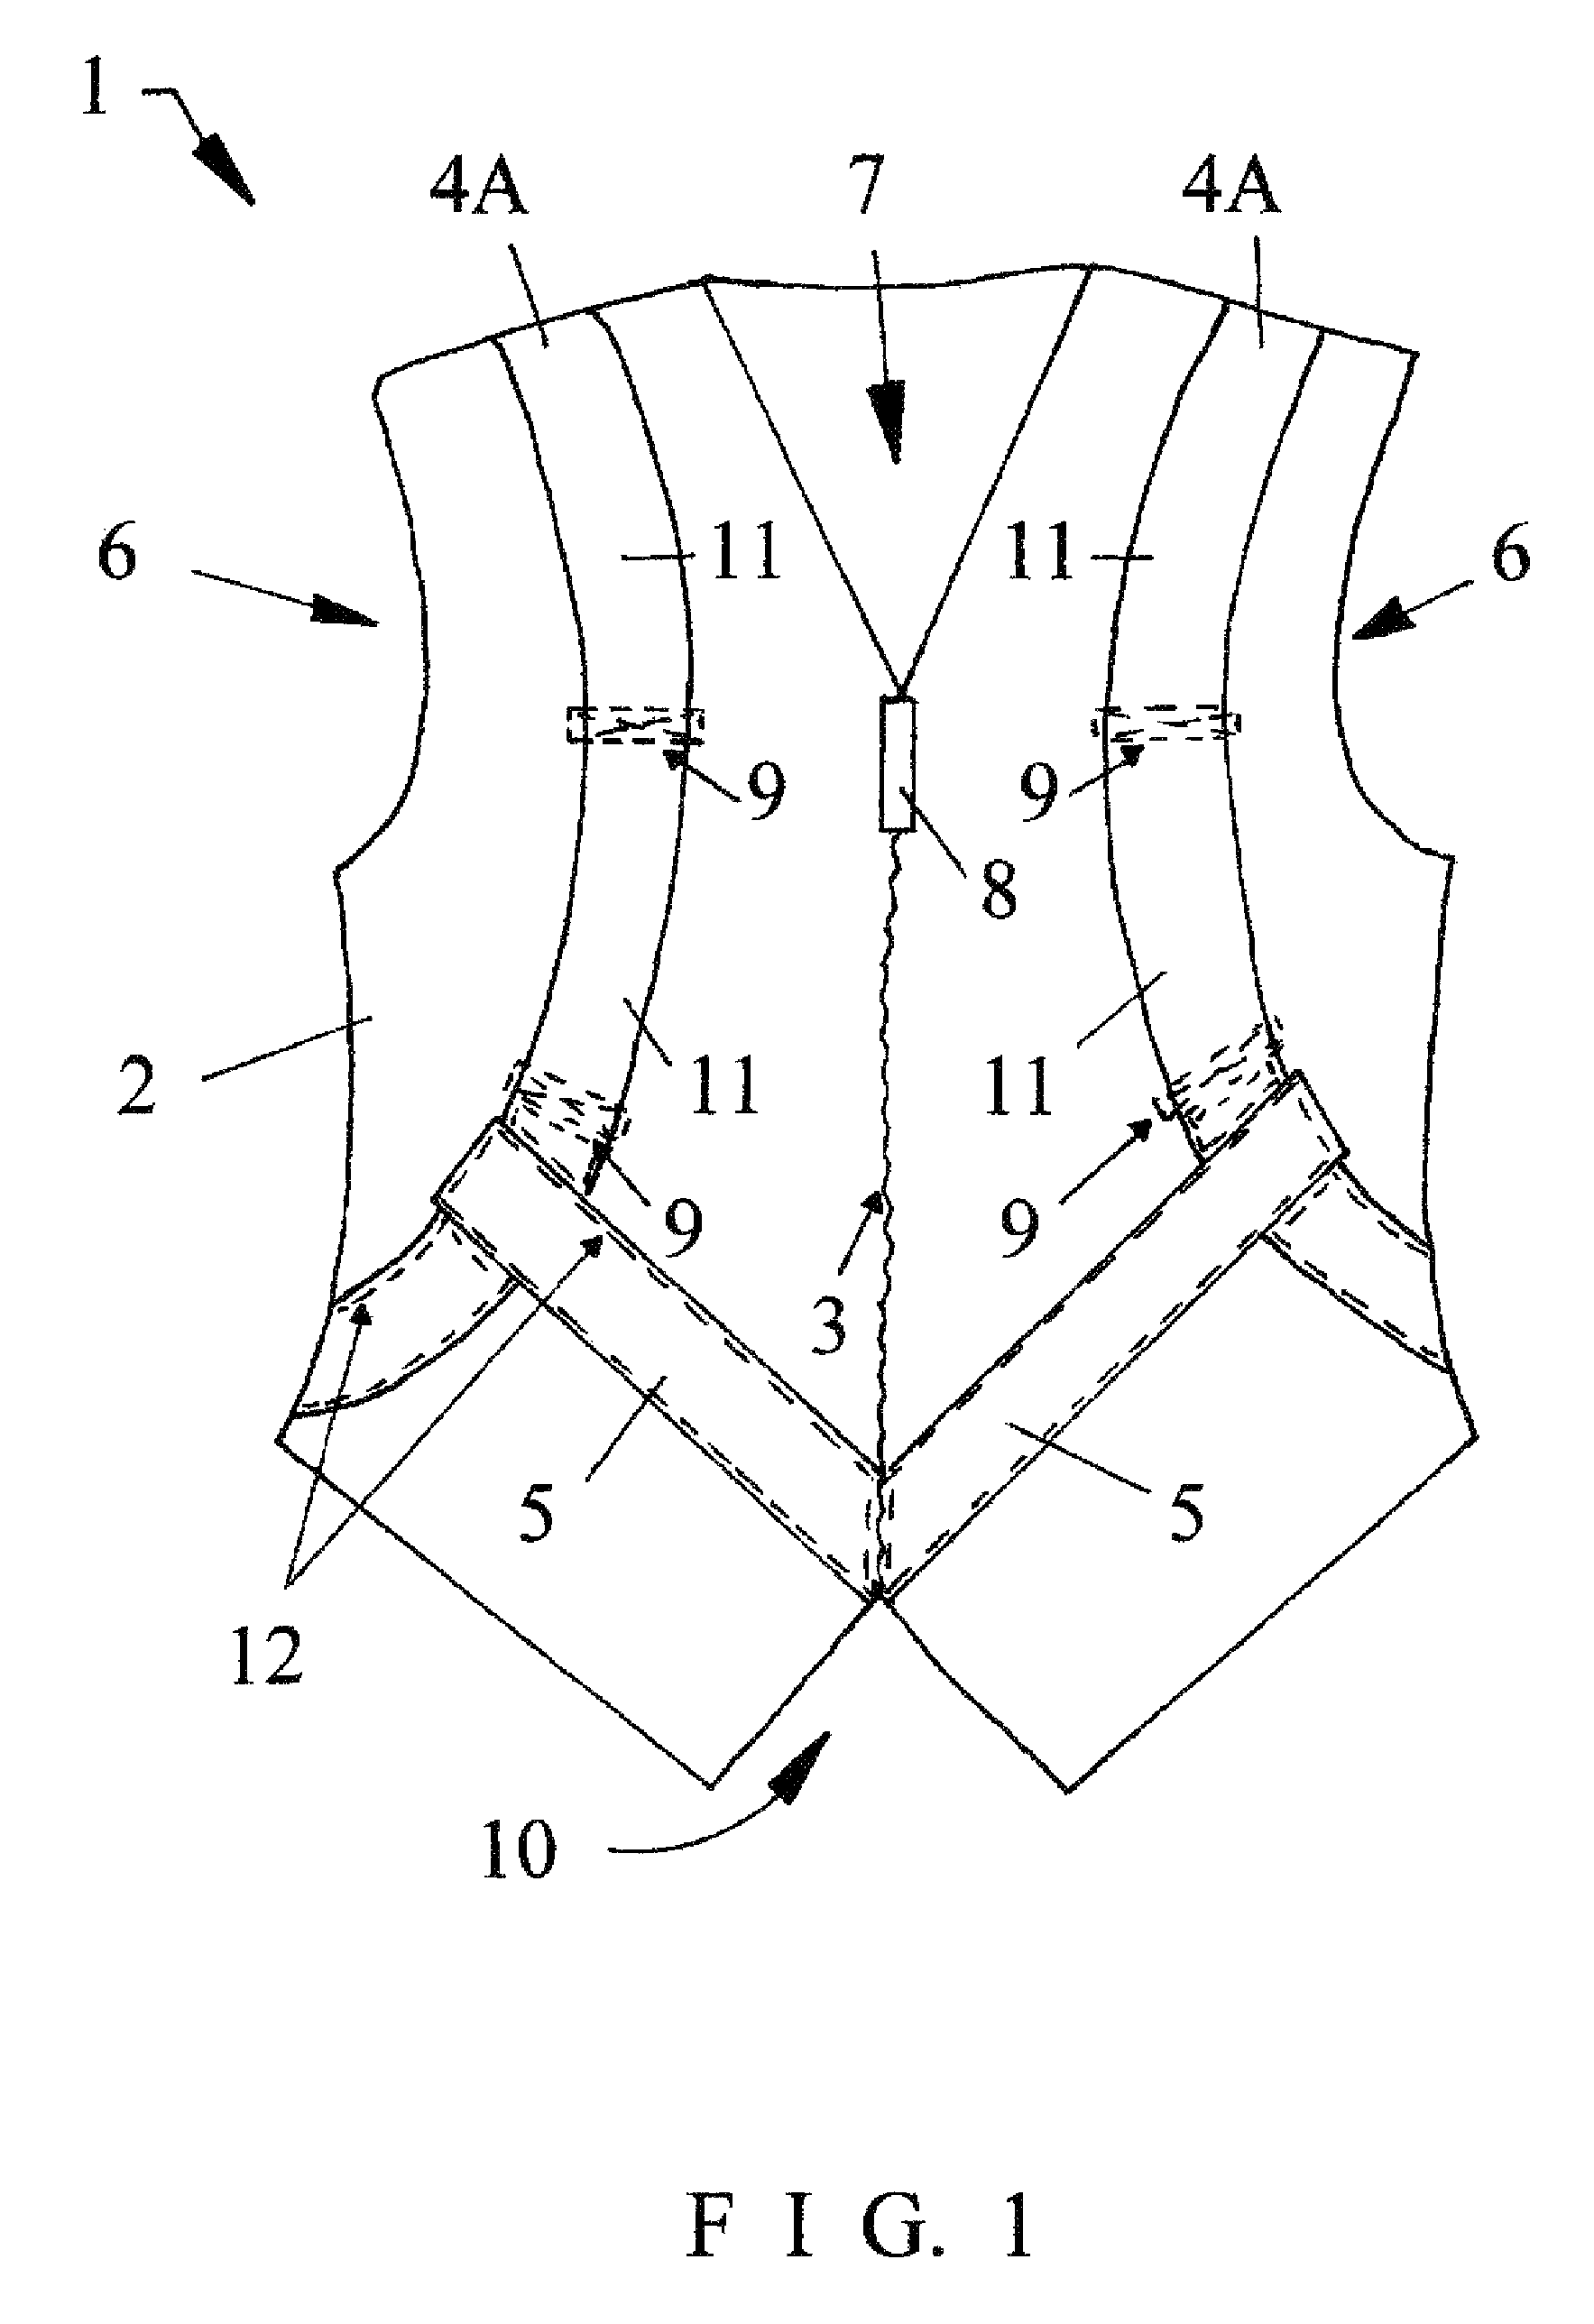 Manual transfer vest